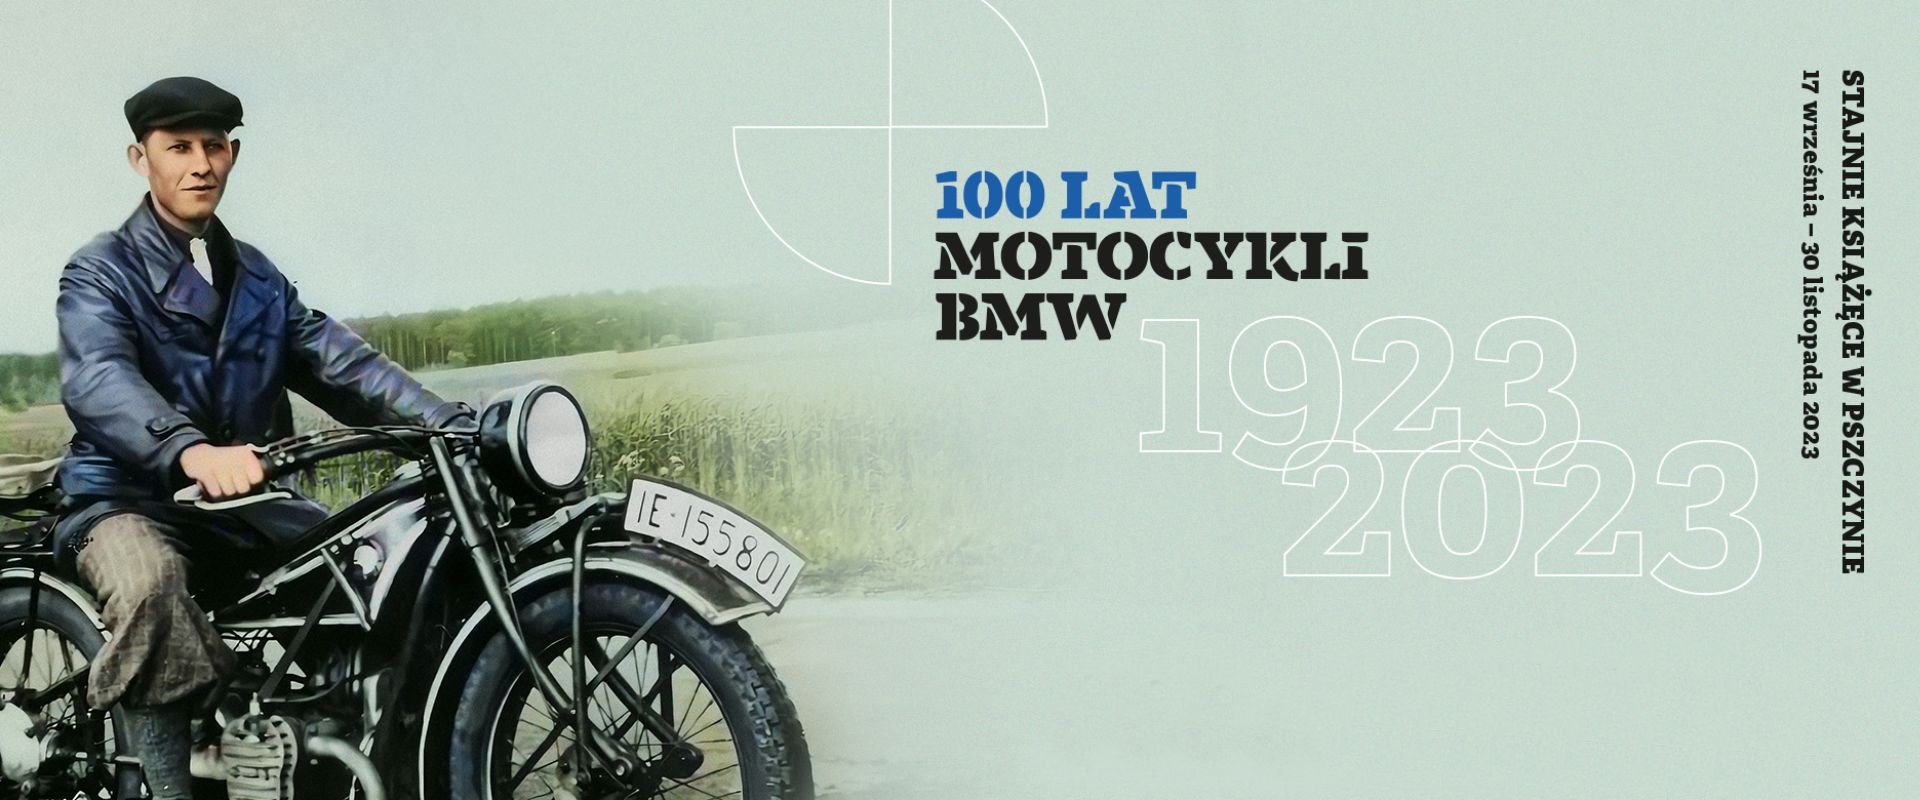 100 lat motocykli BMW